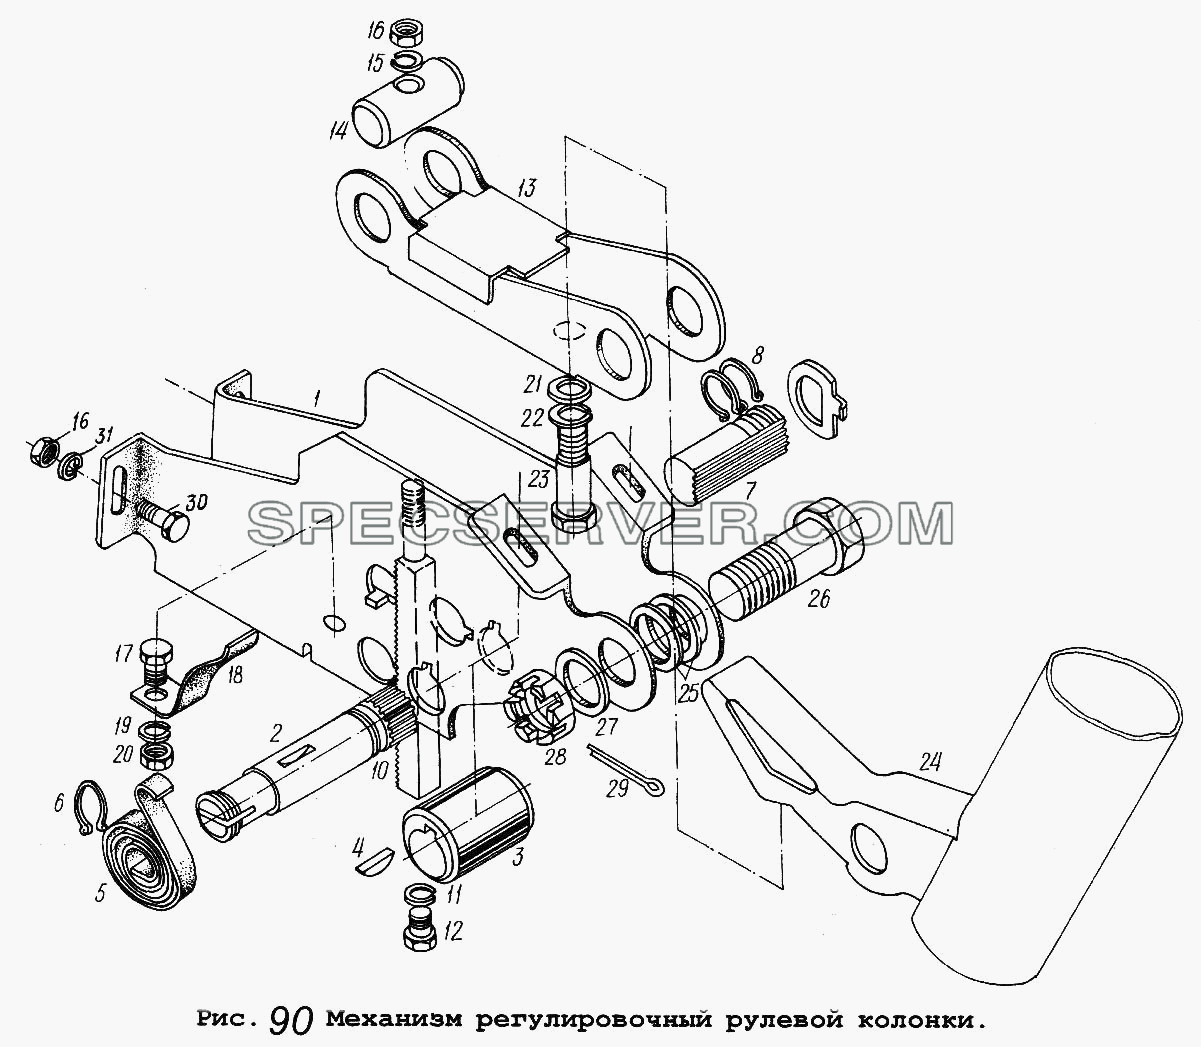 Механизм регулировочный рулевой колонки для МАЗ-5516 (список запасных частей)